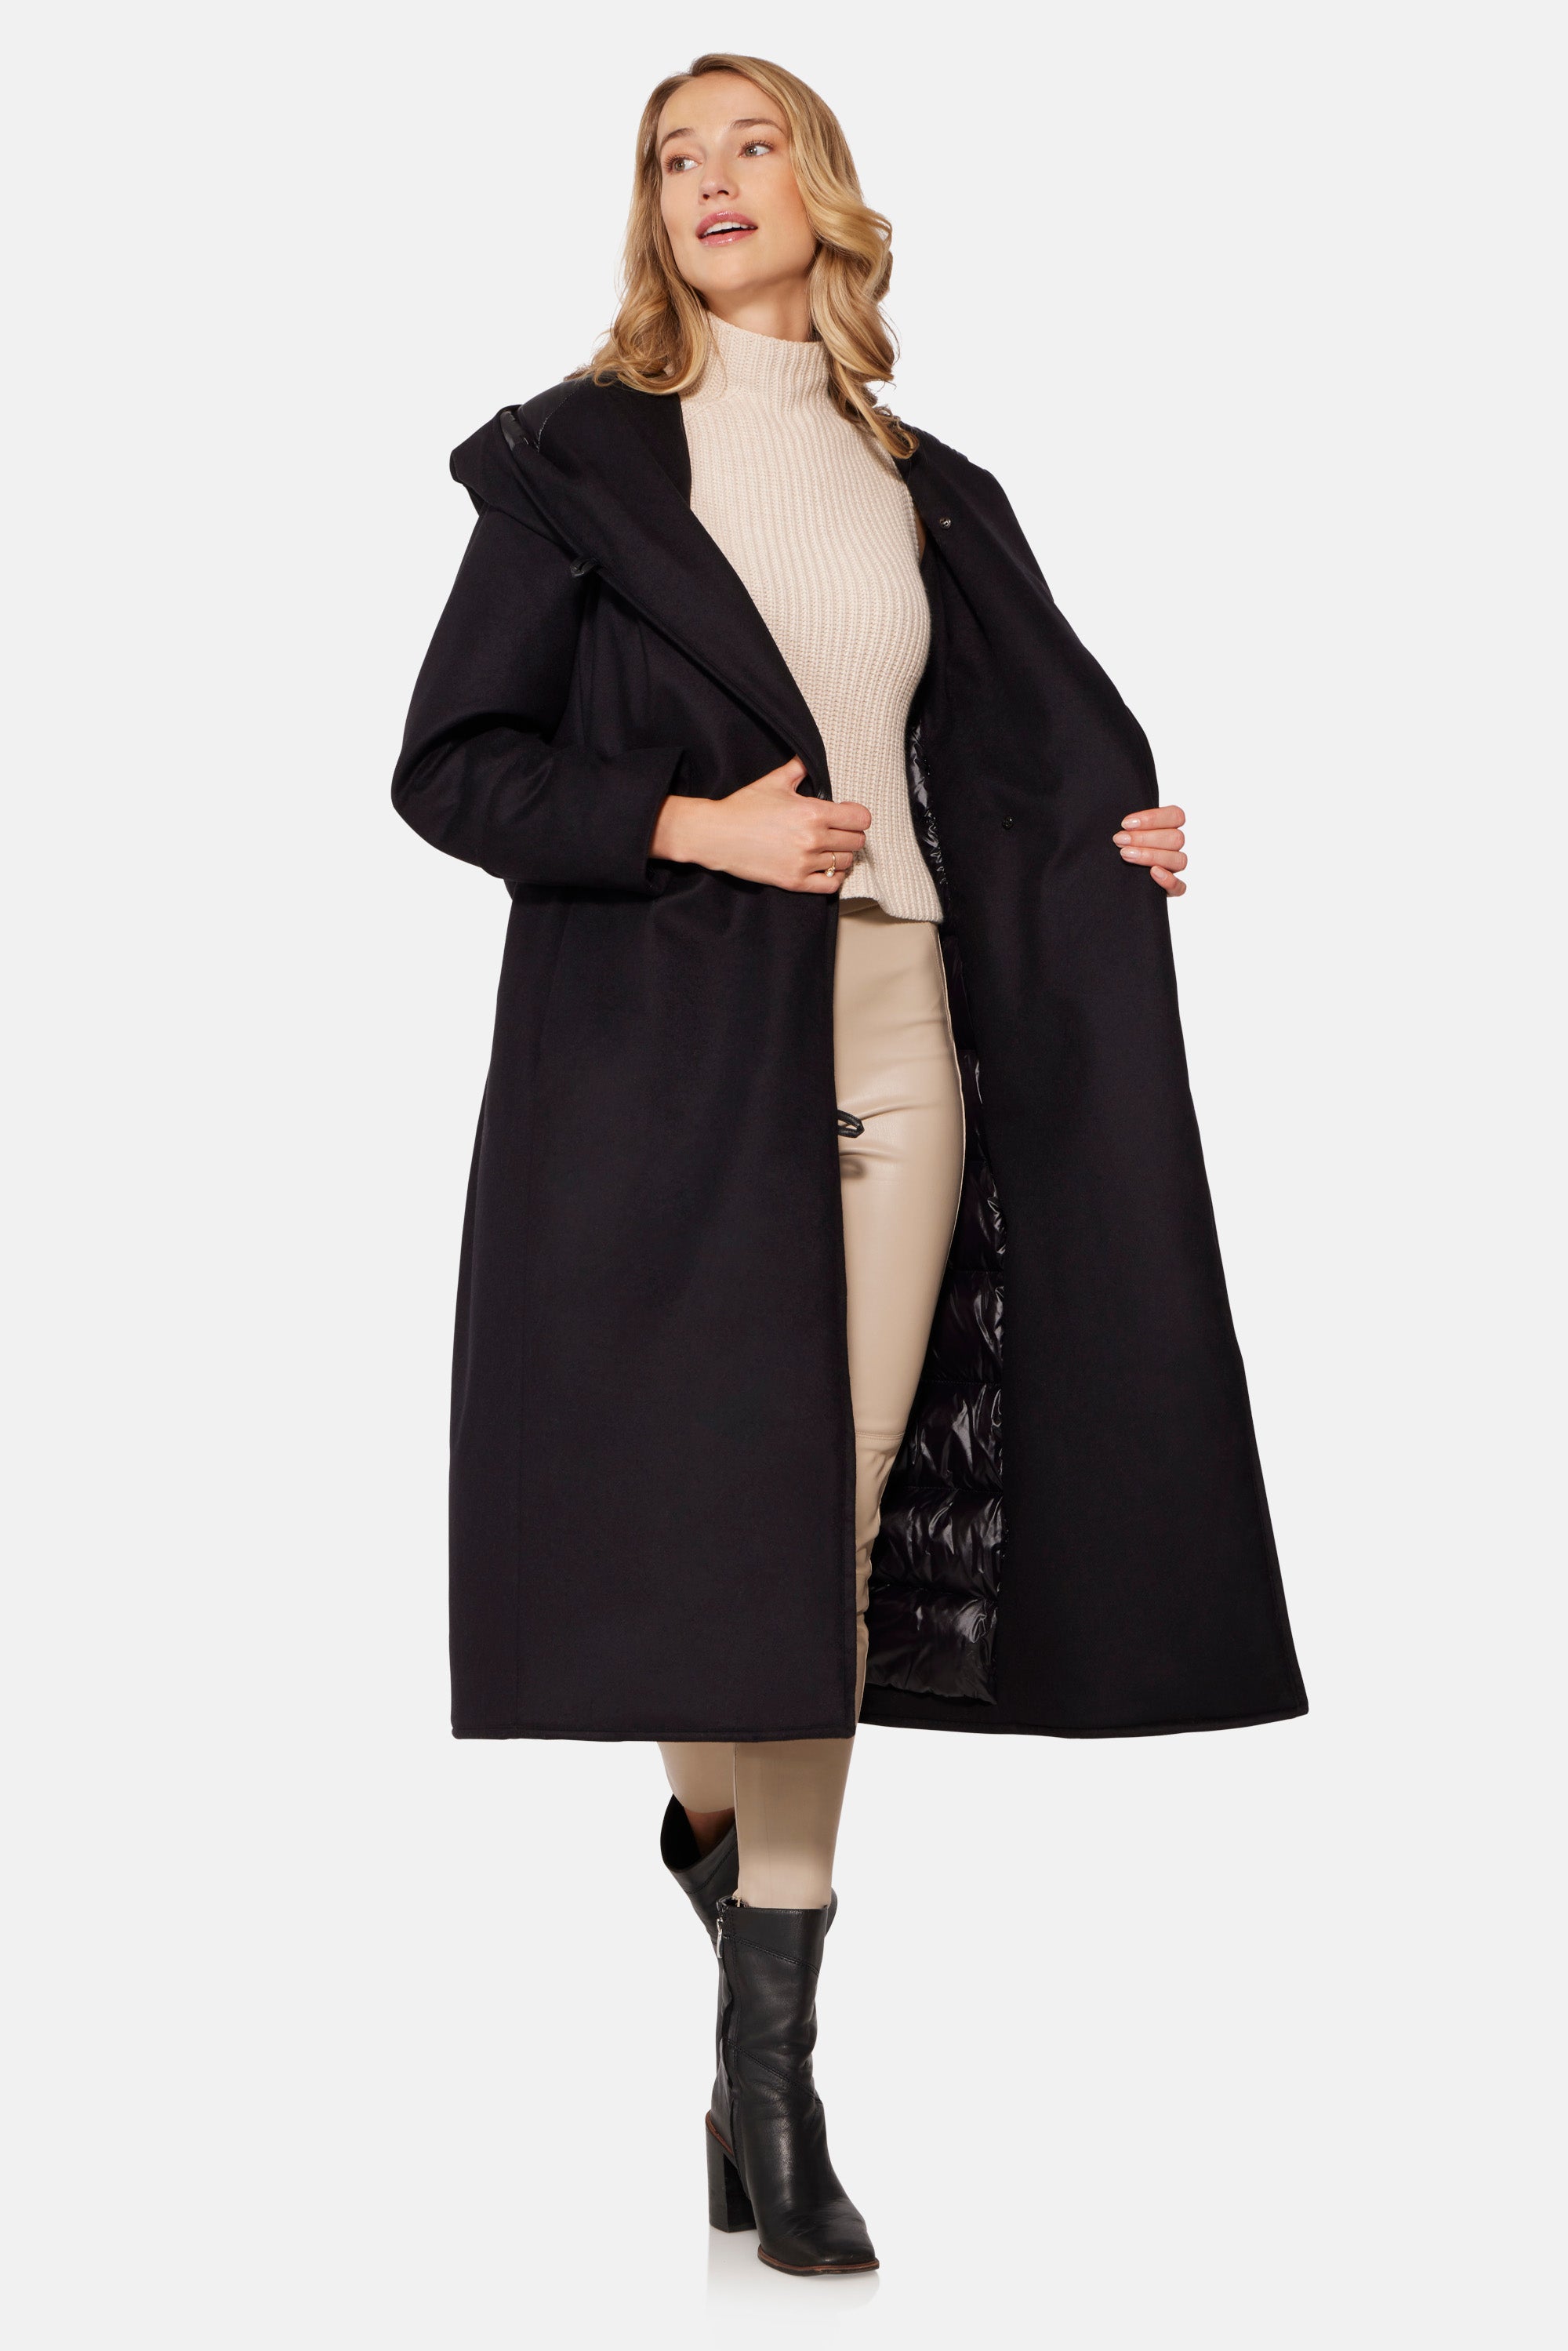 Wrap Coat Wool Coat White Coat Hooded Coat Winter Coat Short Coat